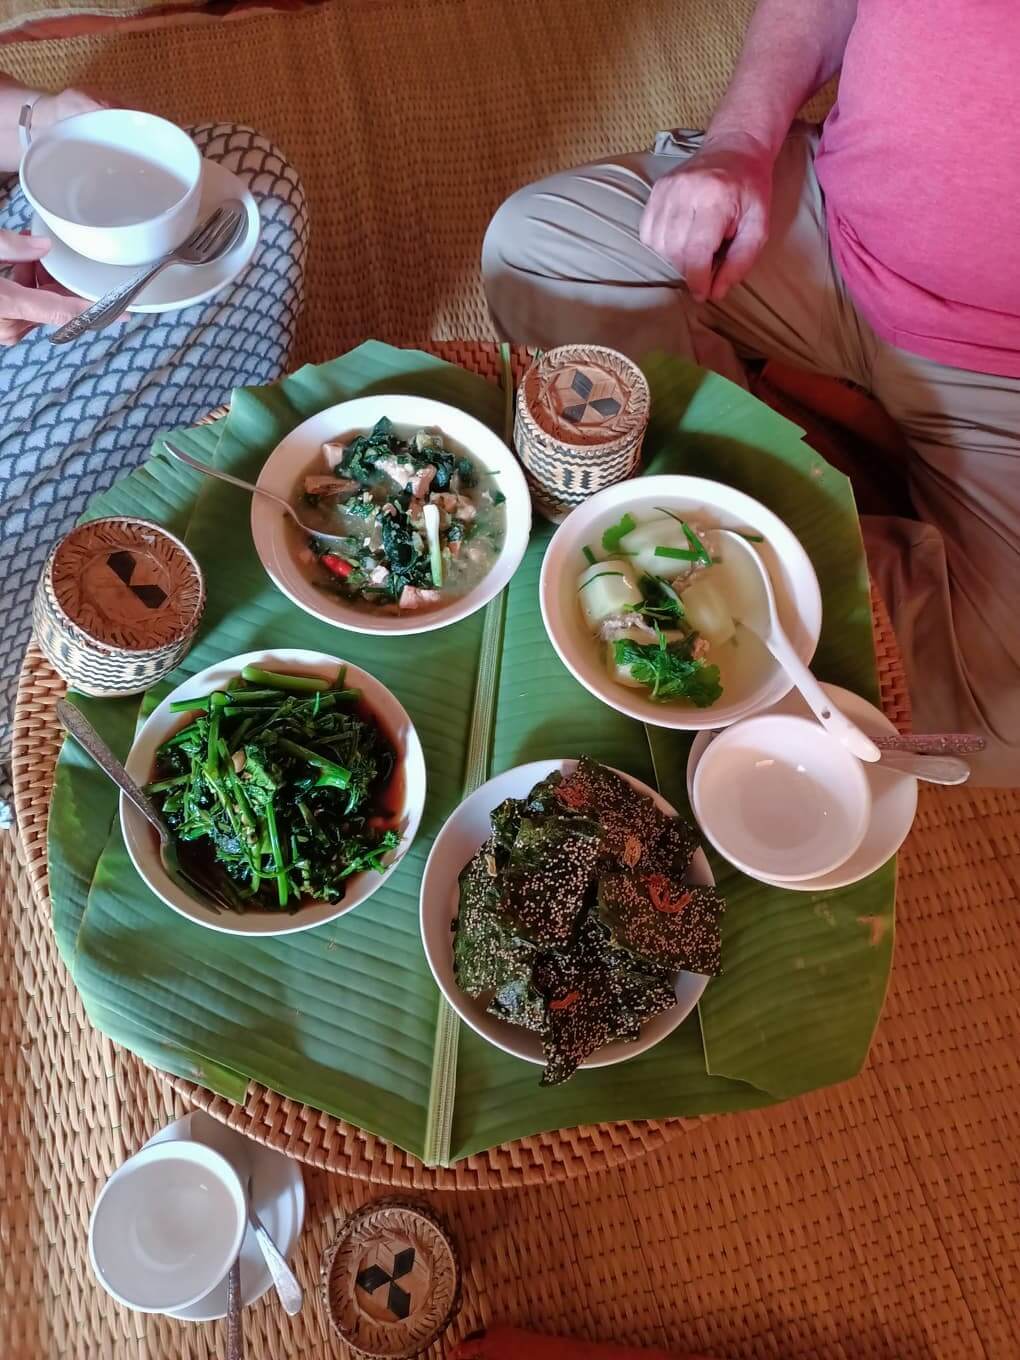 amazing-laos-trip-9-days-luang-prabang-cooking-lunch-2.jpeg